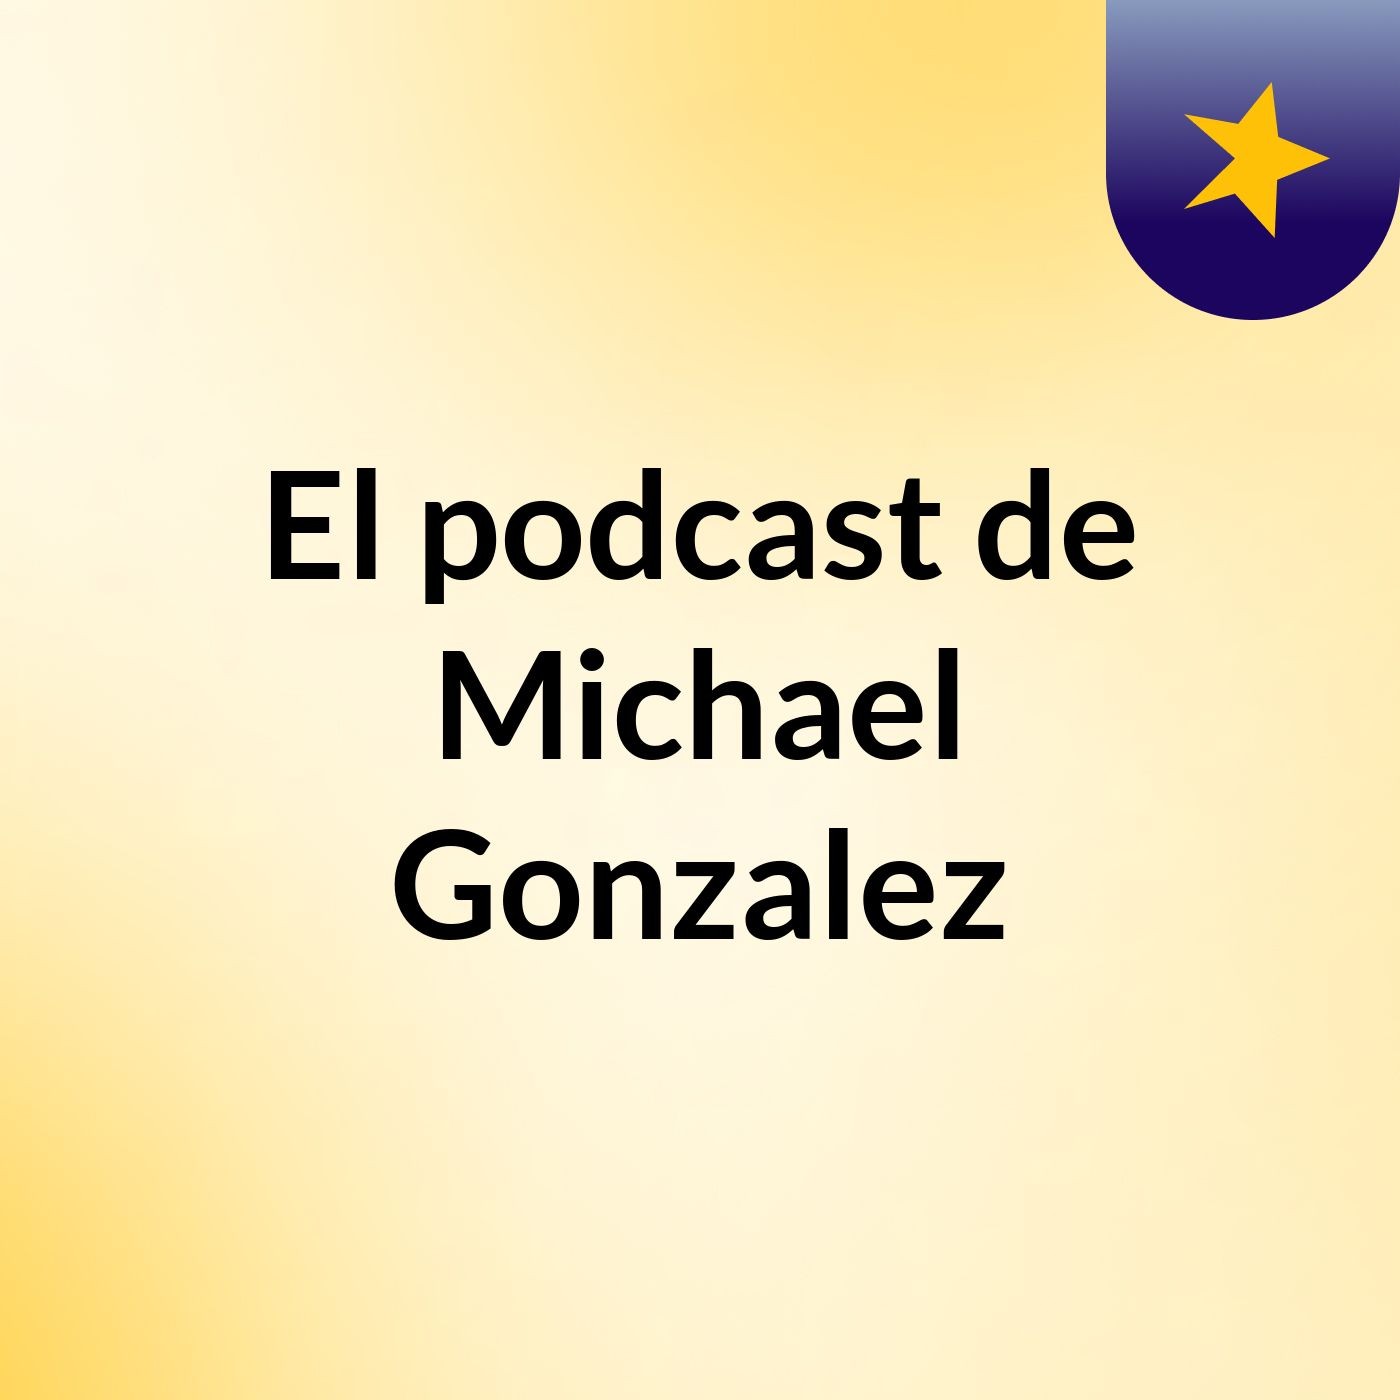 Episodio 2 - El podcast de Michael Gonzalez